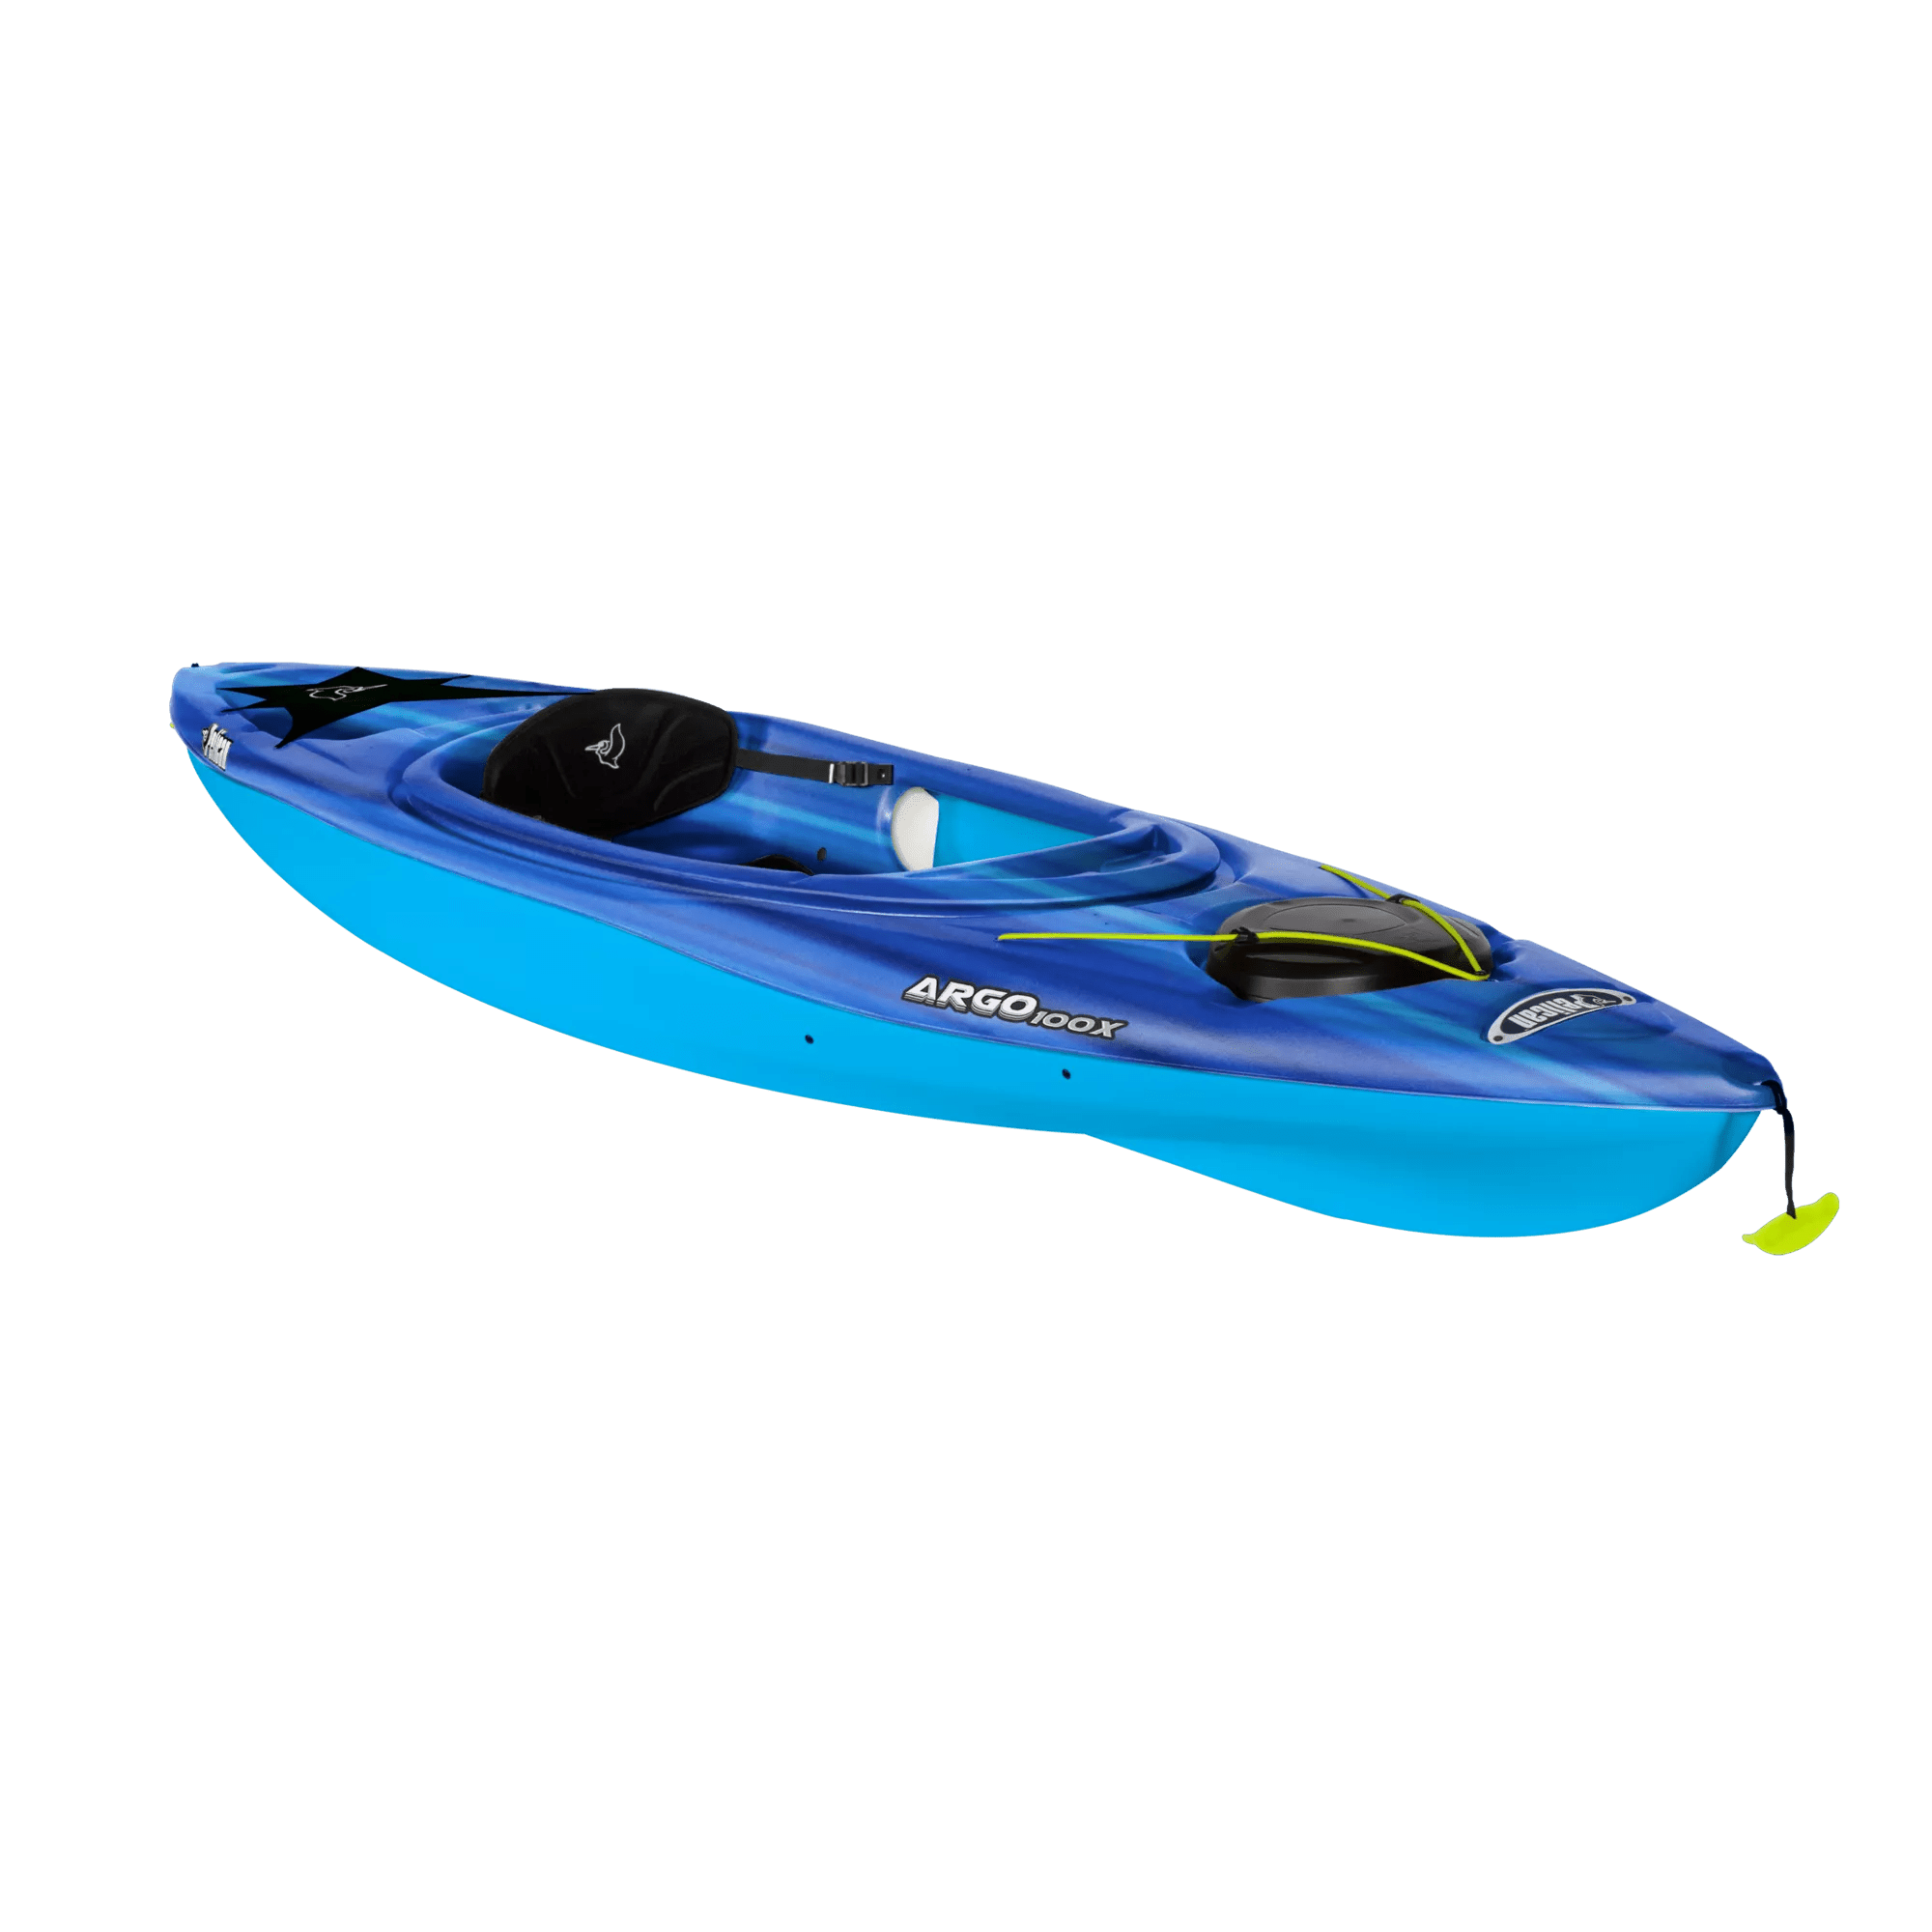 PELICAN - Argo 100X Sit-In Kayak - Blue - KFF10P404 - ISO